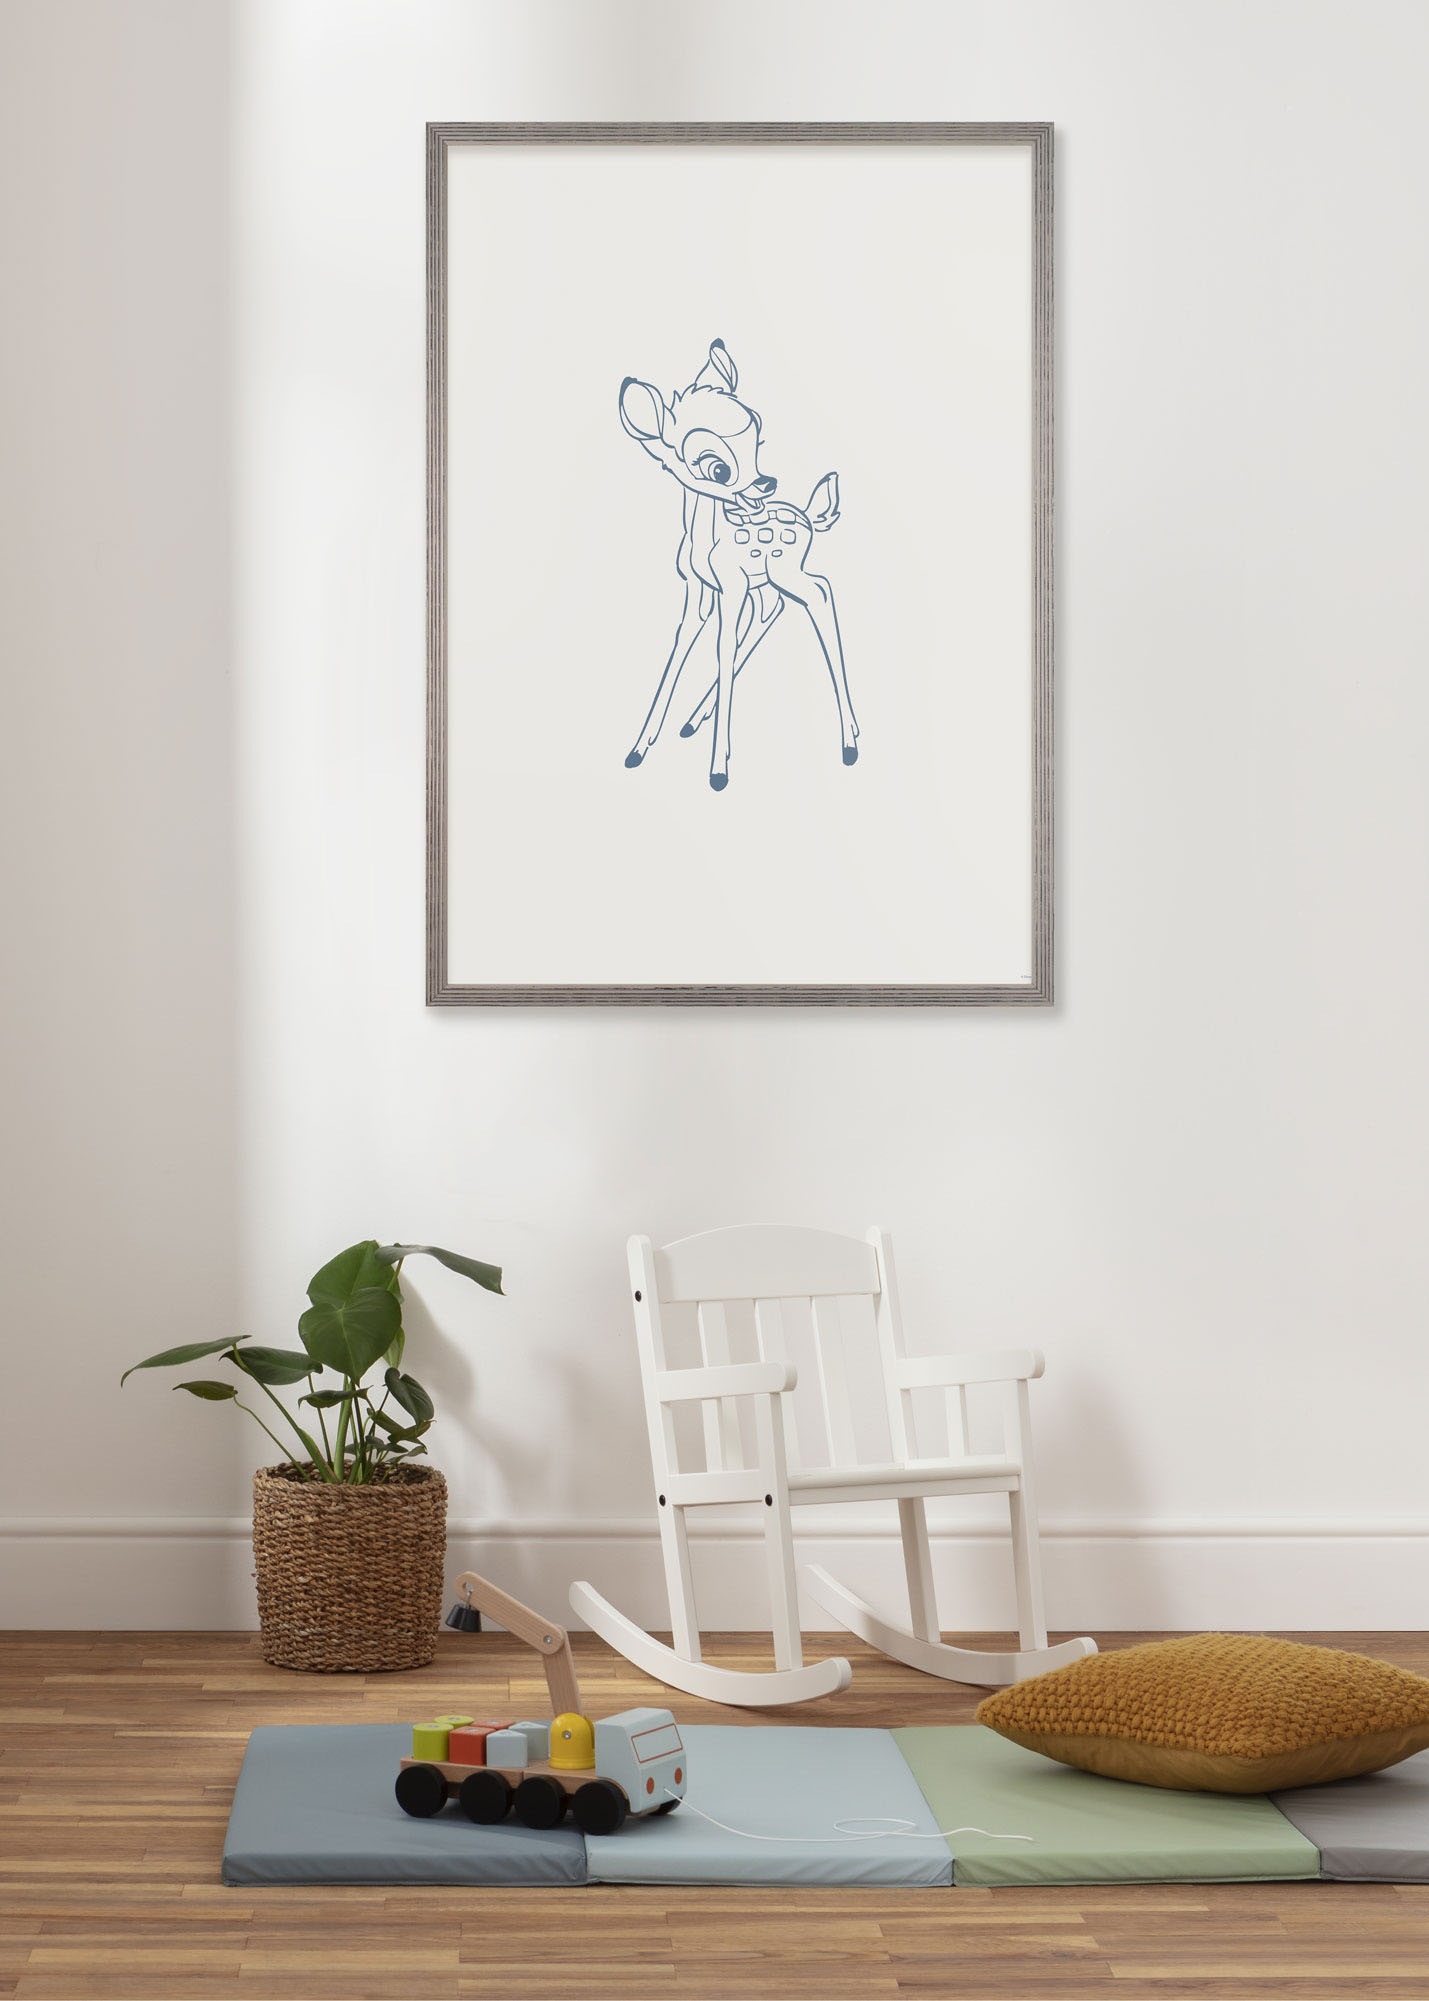 Komar Wandbild »Little Bambini«, (1 St.), Deutsches Premium-Poster Fotopapier mit seidenmatter Oberfläche und hoher Lichtbeständigkeit. Für fotorealistische Drucke mit gestochen scharfen Details und hervorragender Farbbrillanz.